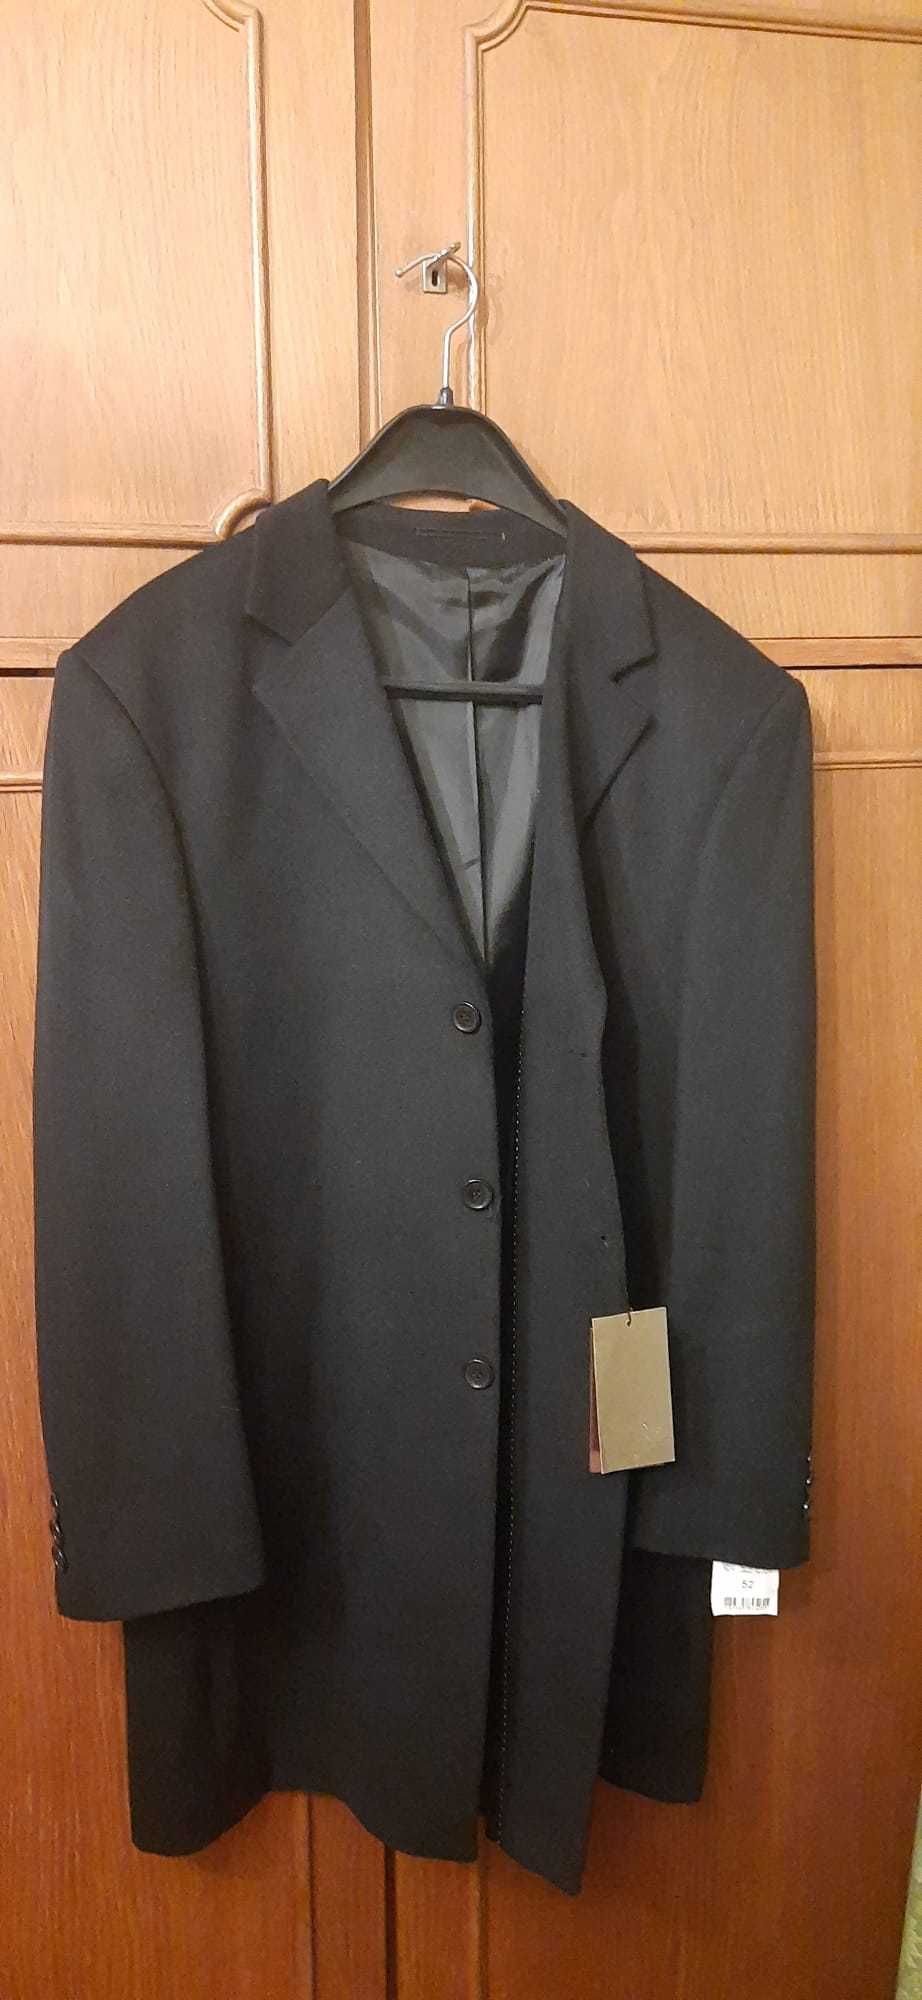 Palton bărbătesc negru, nou (cu eticheta) lână 80%, mărimea 52